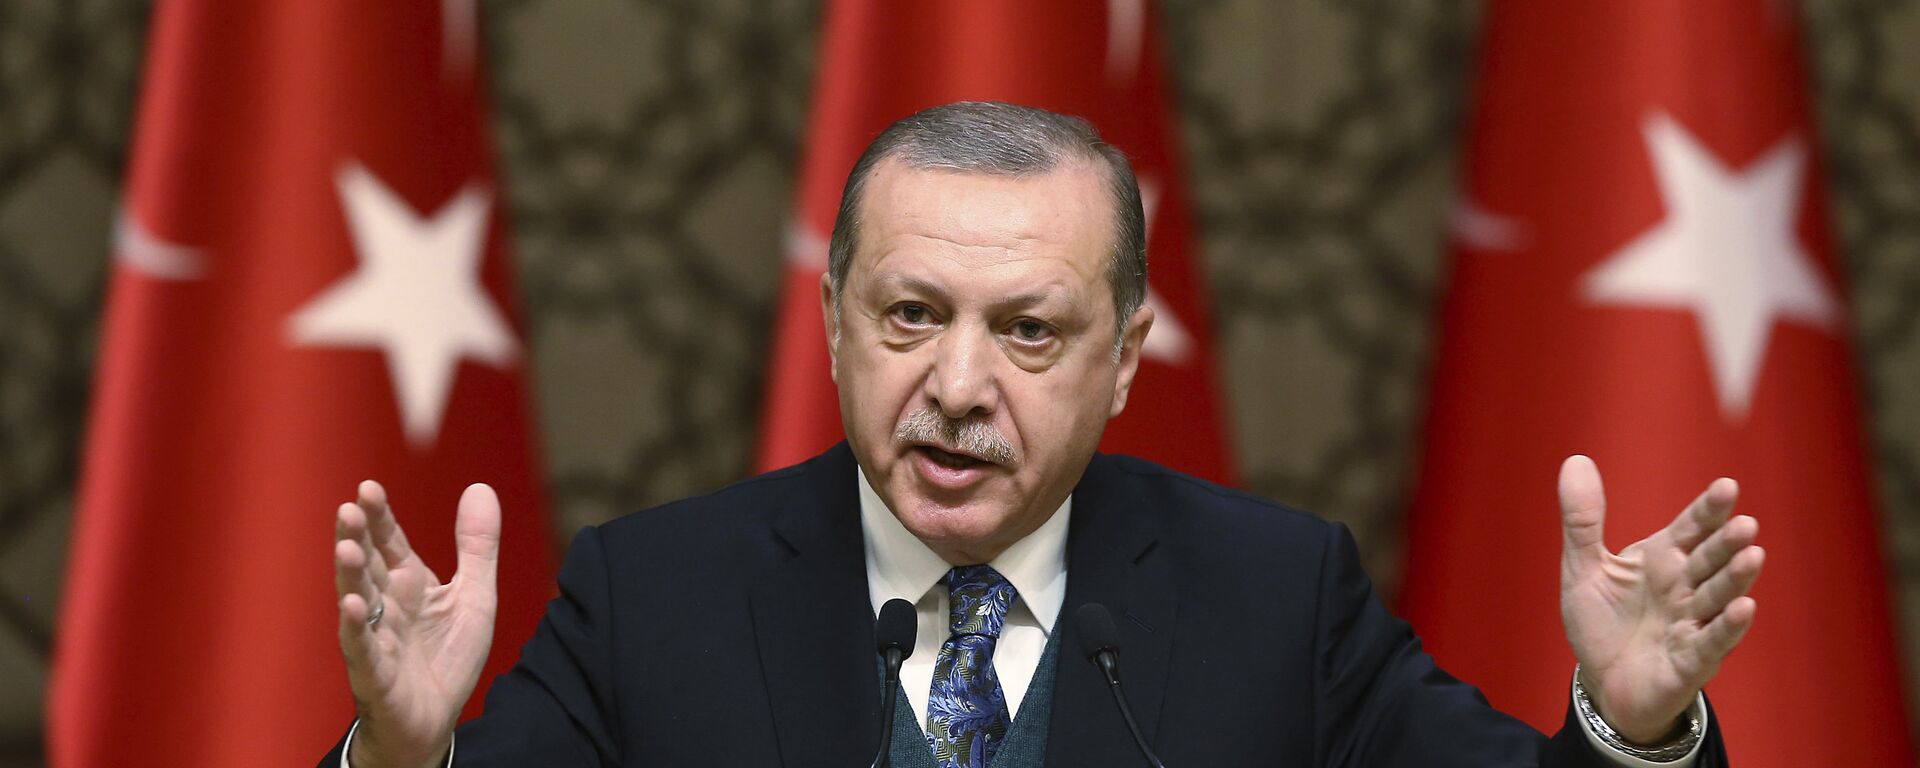 El presidente de Turquía, Recep Tayyip Erdogan, habla durante una ceremonia de premios culturales en Ankara, Turquía - Sputnik Mundo, 1920, 01.06.2022